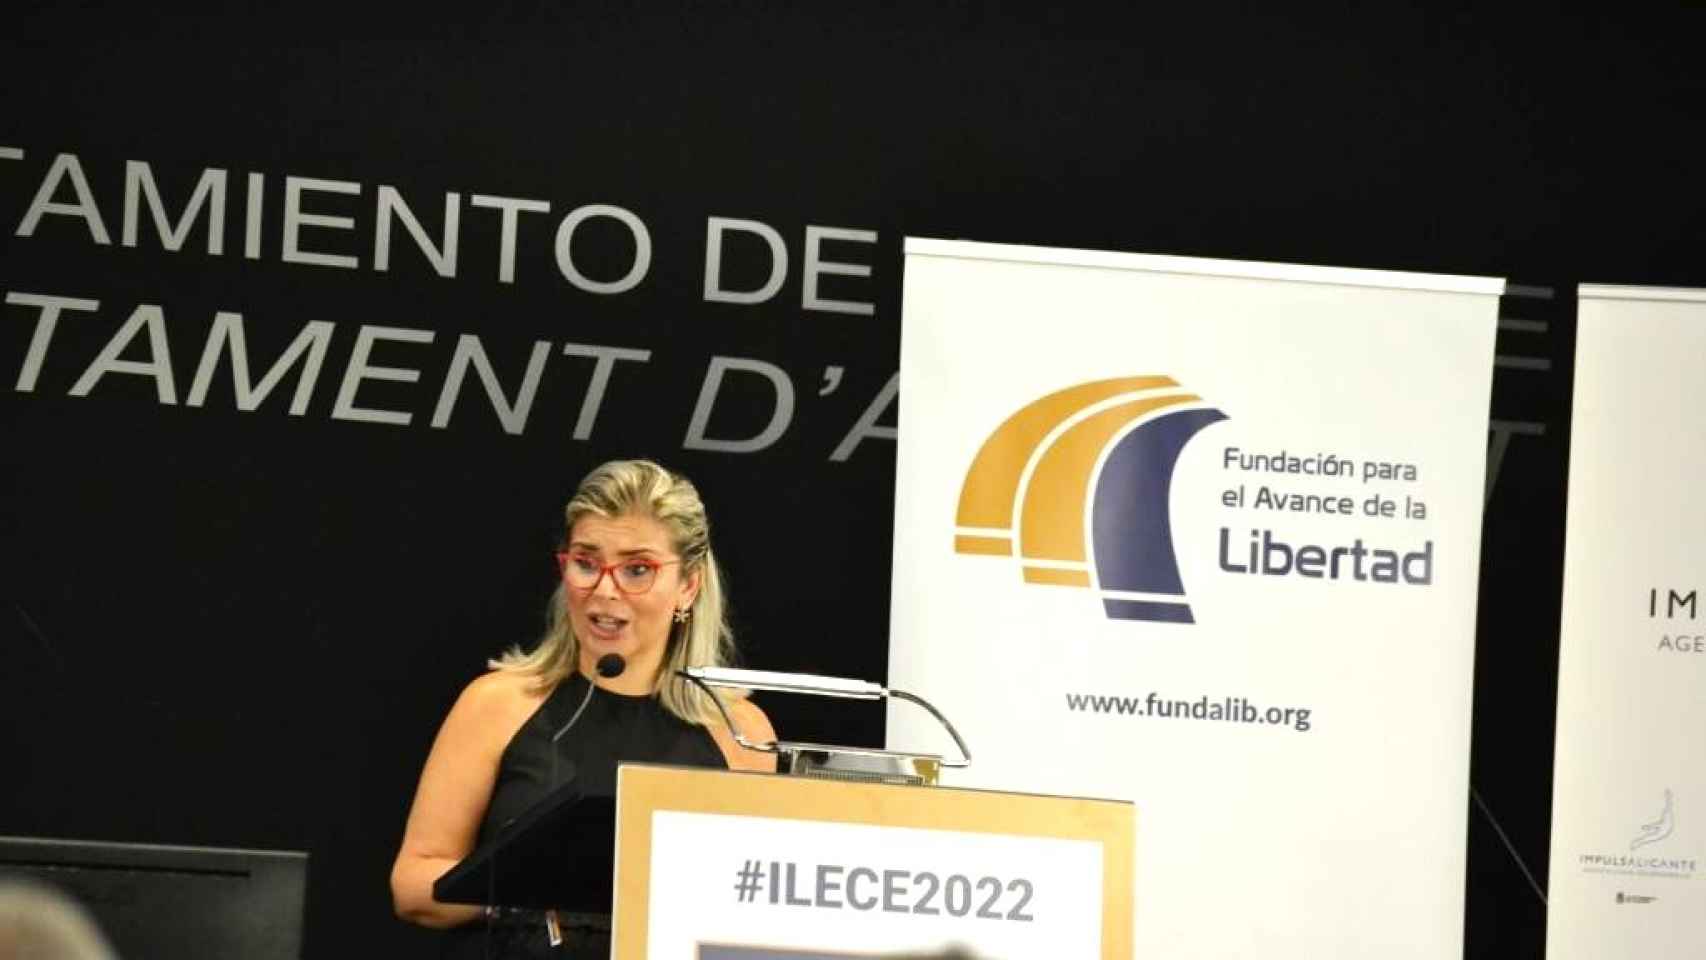 La vicealcaldesa Mari Carmen Sánchez en su intervención al recoger el premio a la libertad.